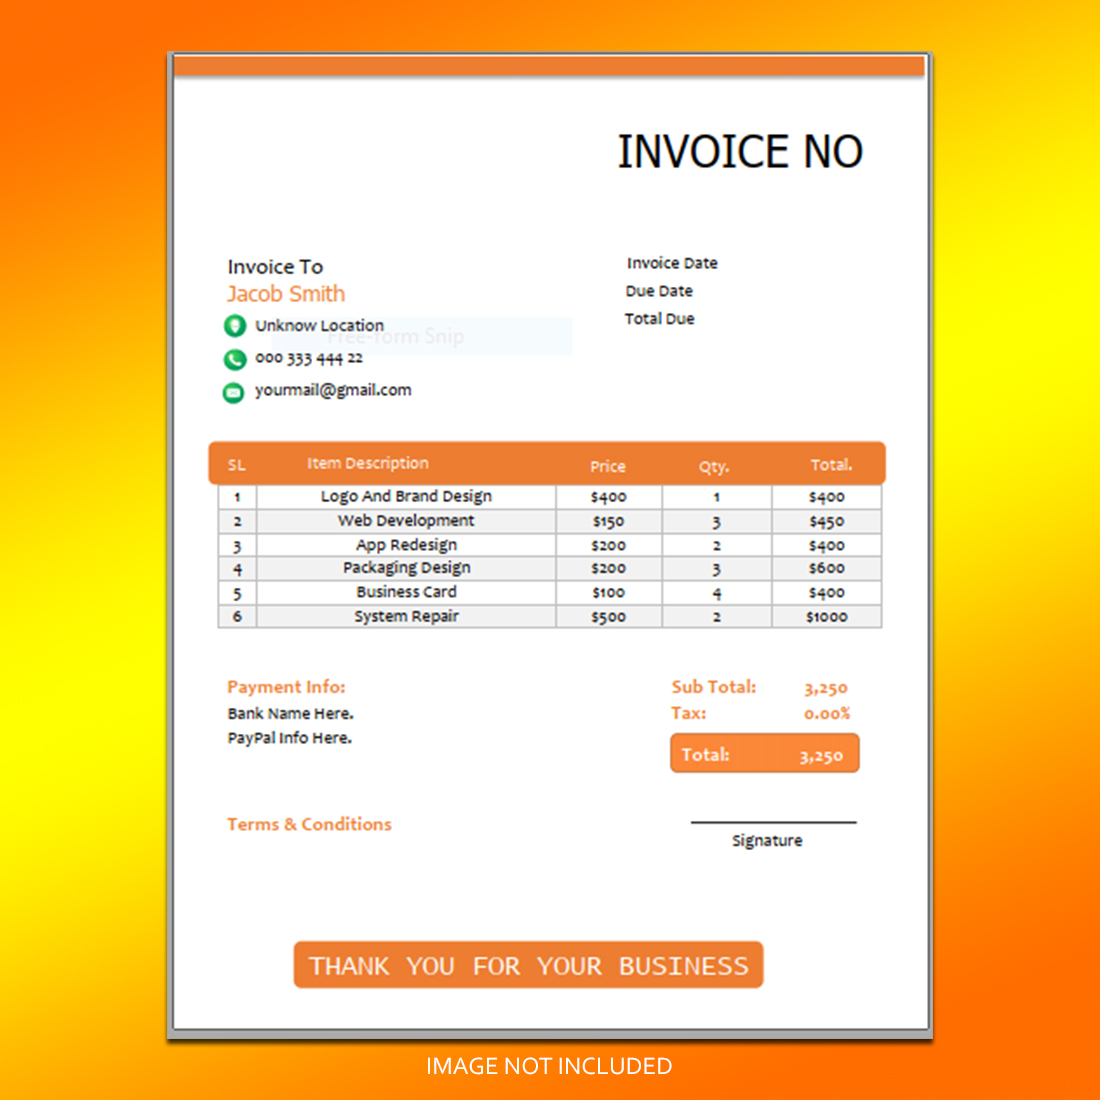 Invoice design cover image.